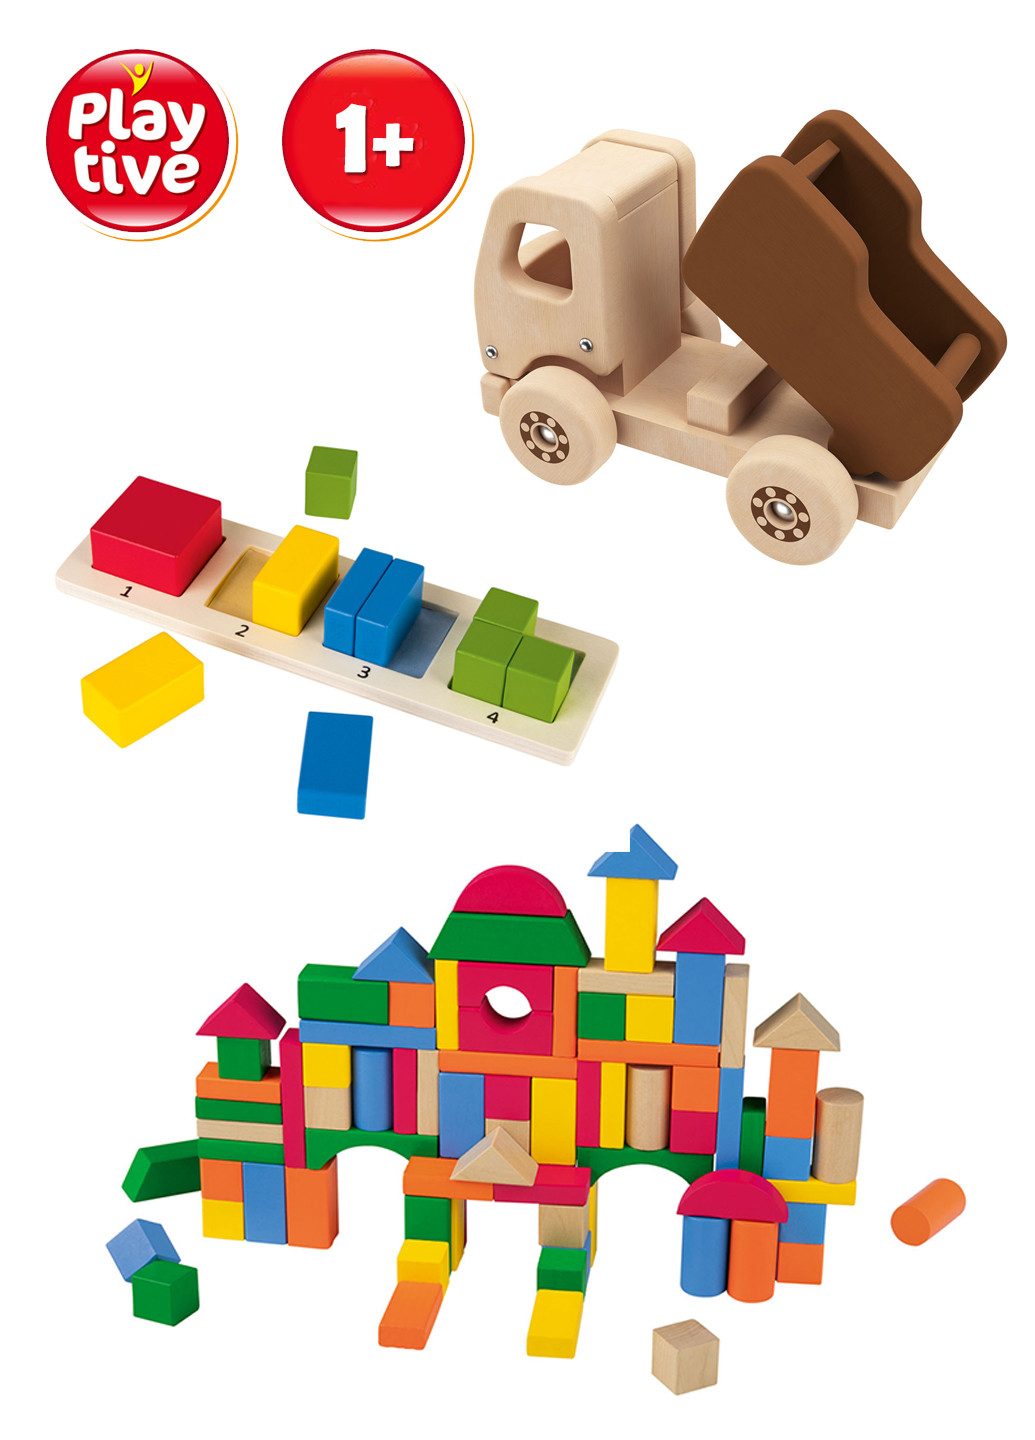 Игрушки для детей (3 набора) Playtive (260600406)